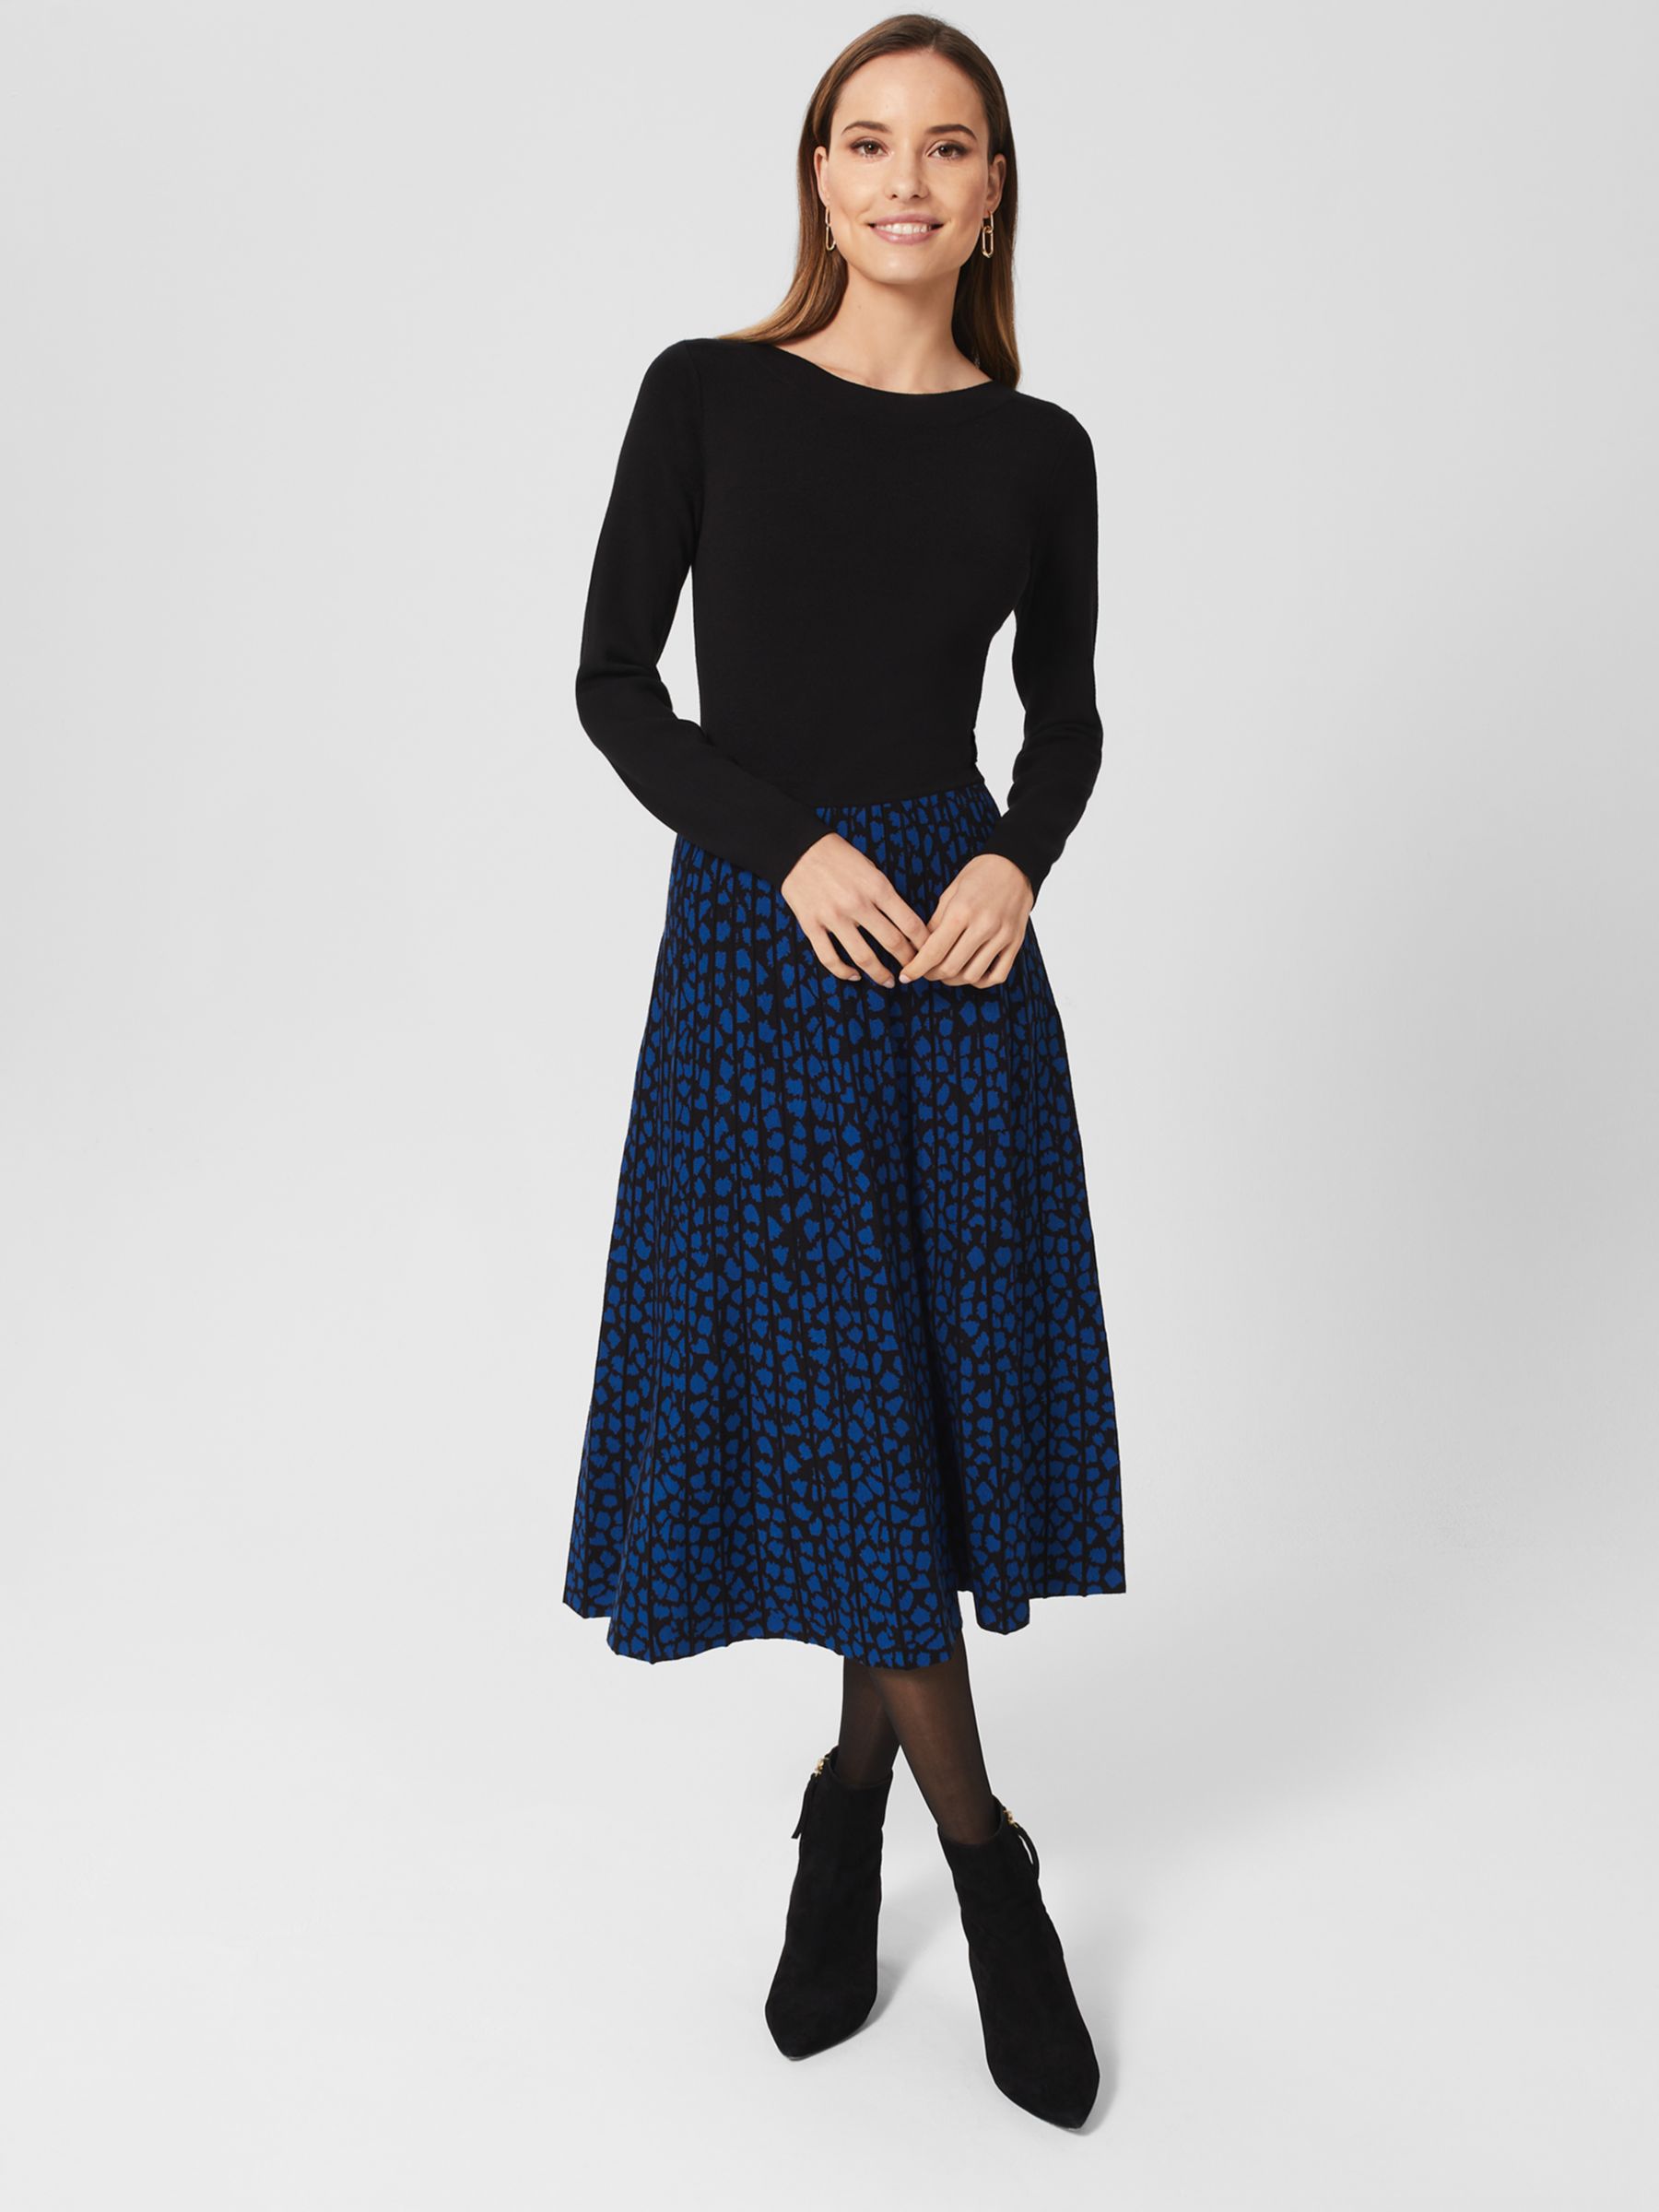 Hobbs Petite Elena Knit Midi Dress, Black/Blue at John Lewis & Partners